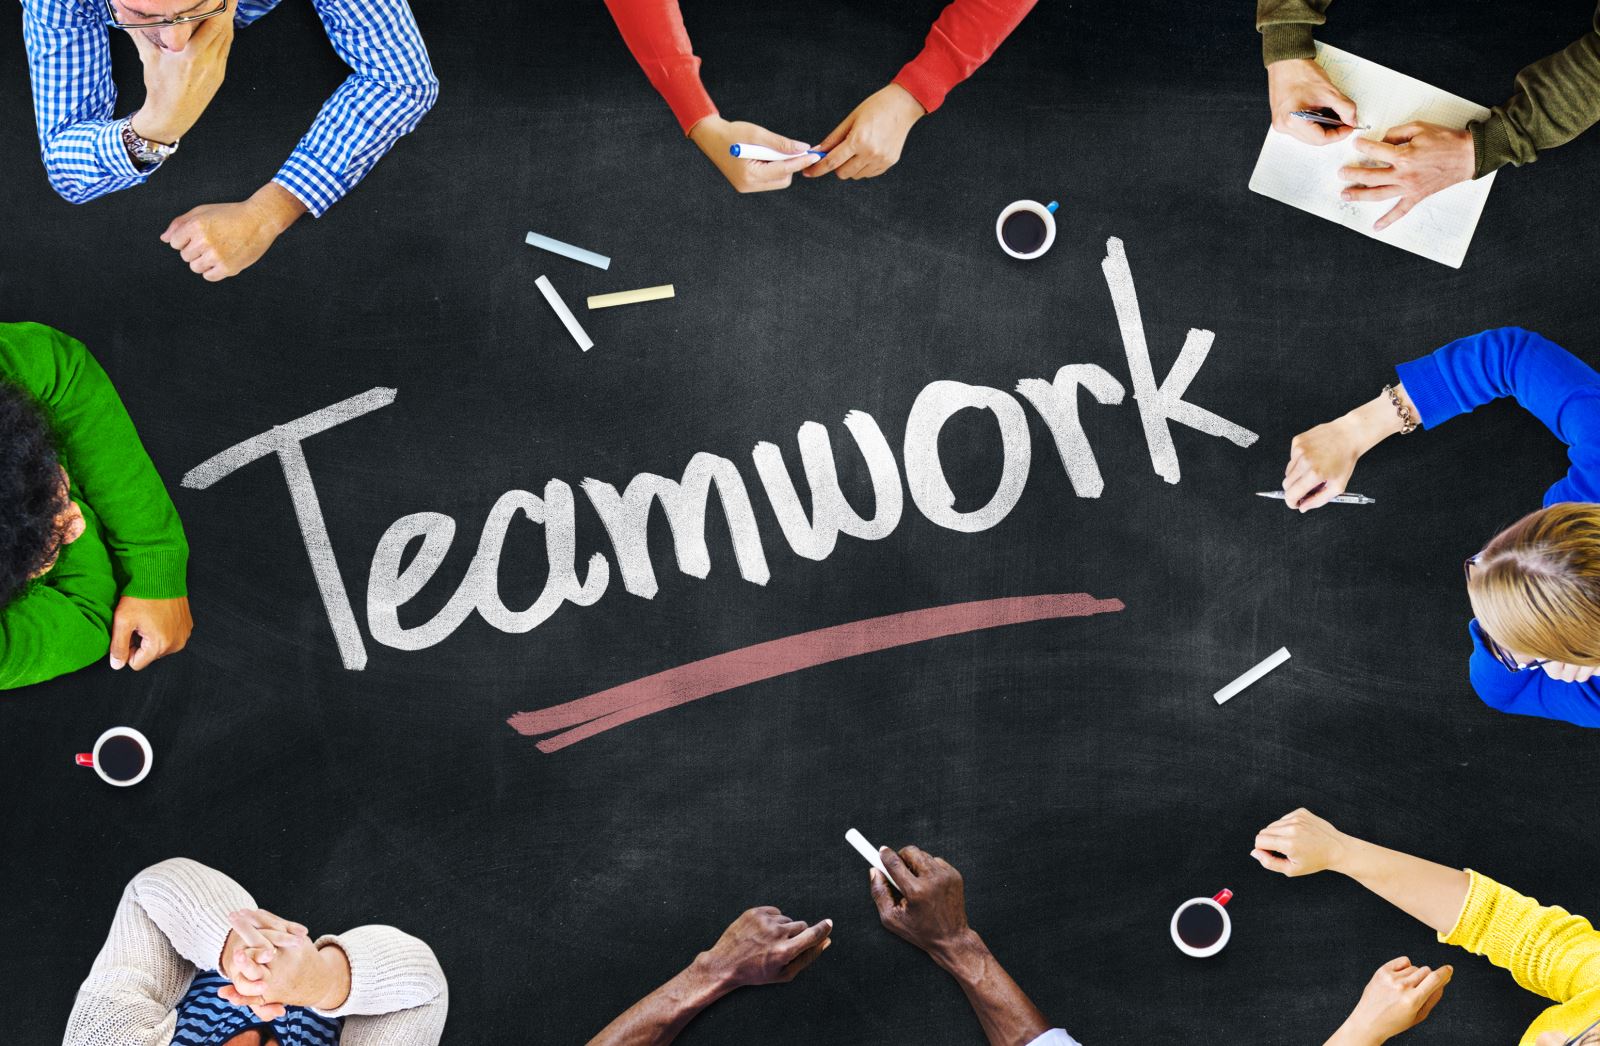 Teamwork là gì?